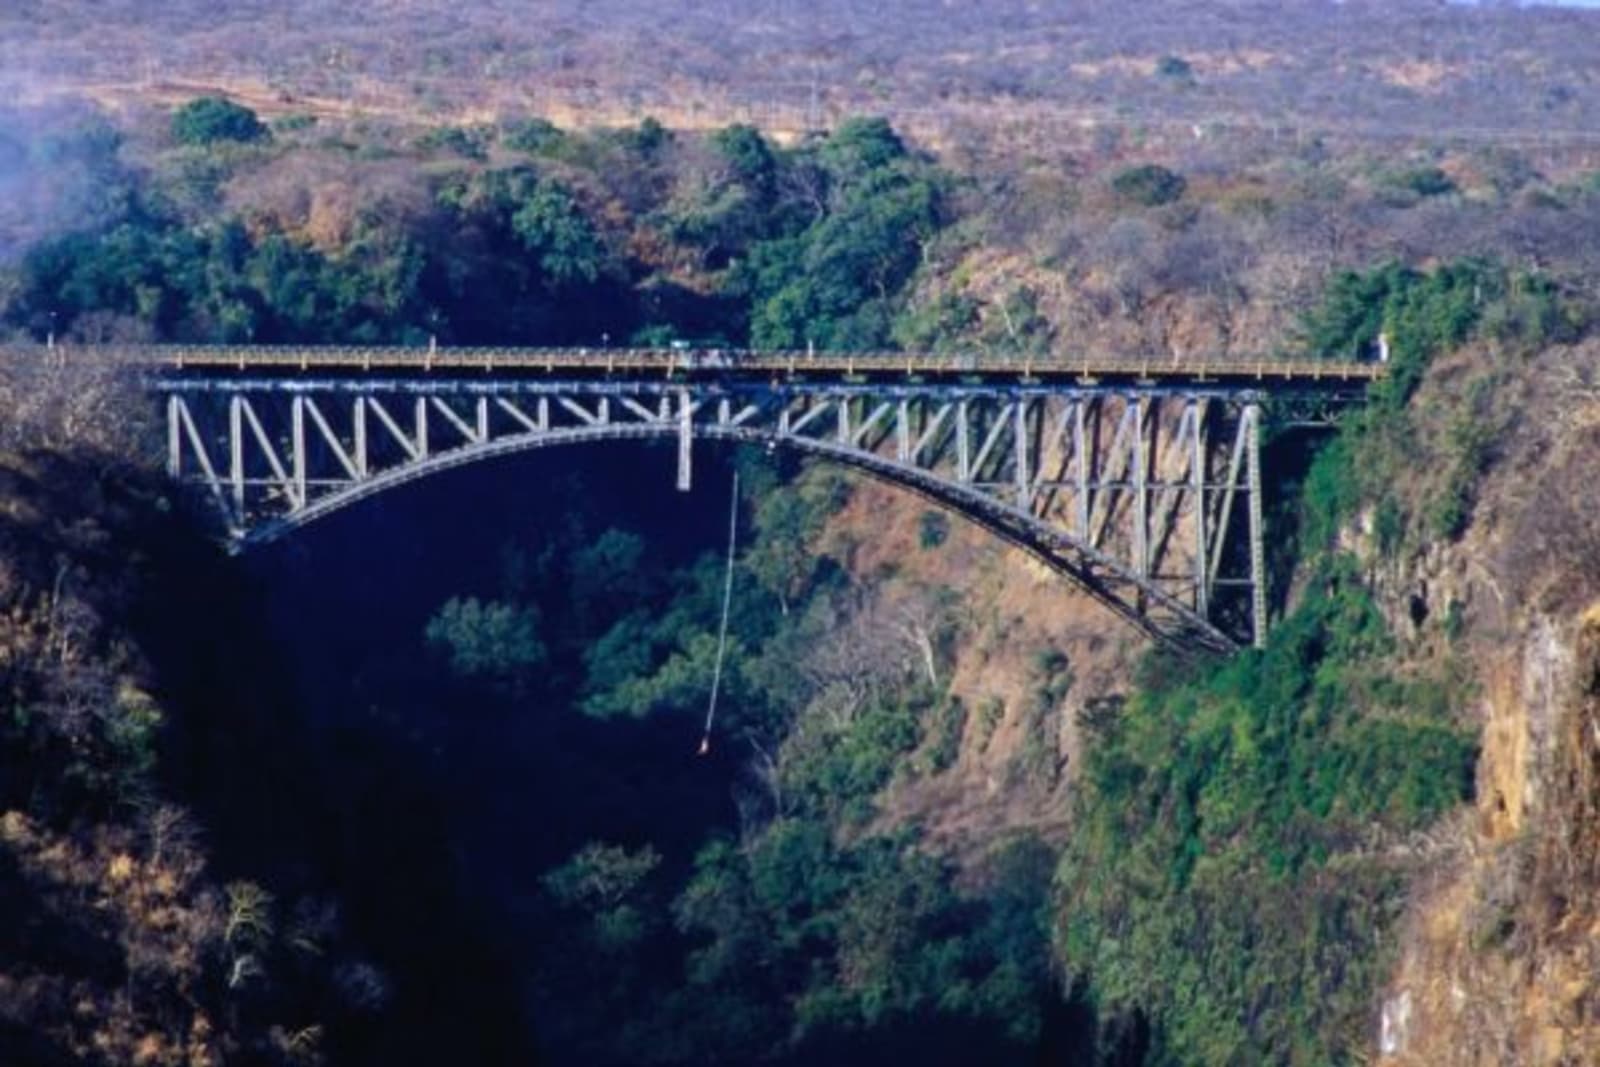 Bungee jumping off a bridge in Zimbabwe